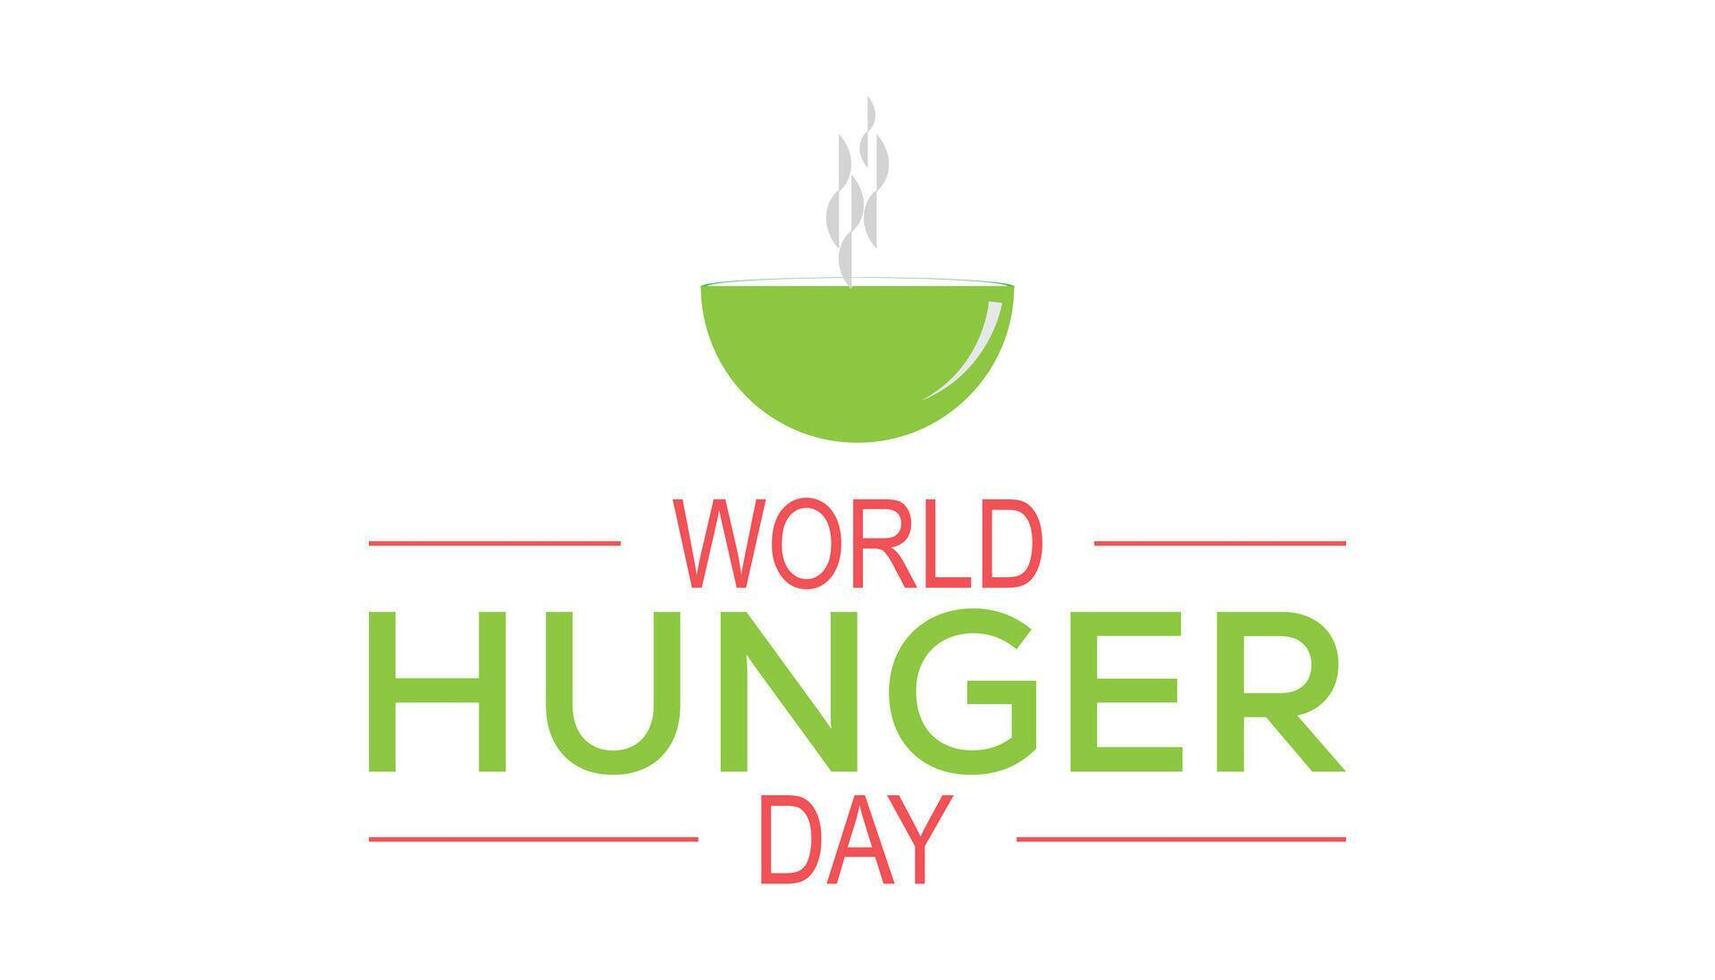 wereld honger dag opgemerkt elke jaar in mei 28. sjabloon voor achtergrond, banier, kaart, poster met tekst inscriptie. vector